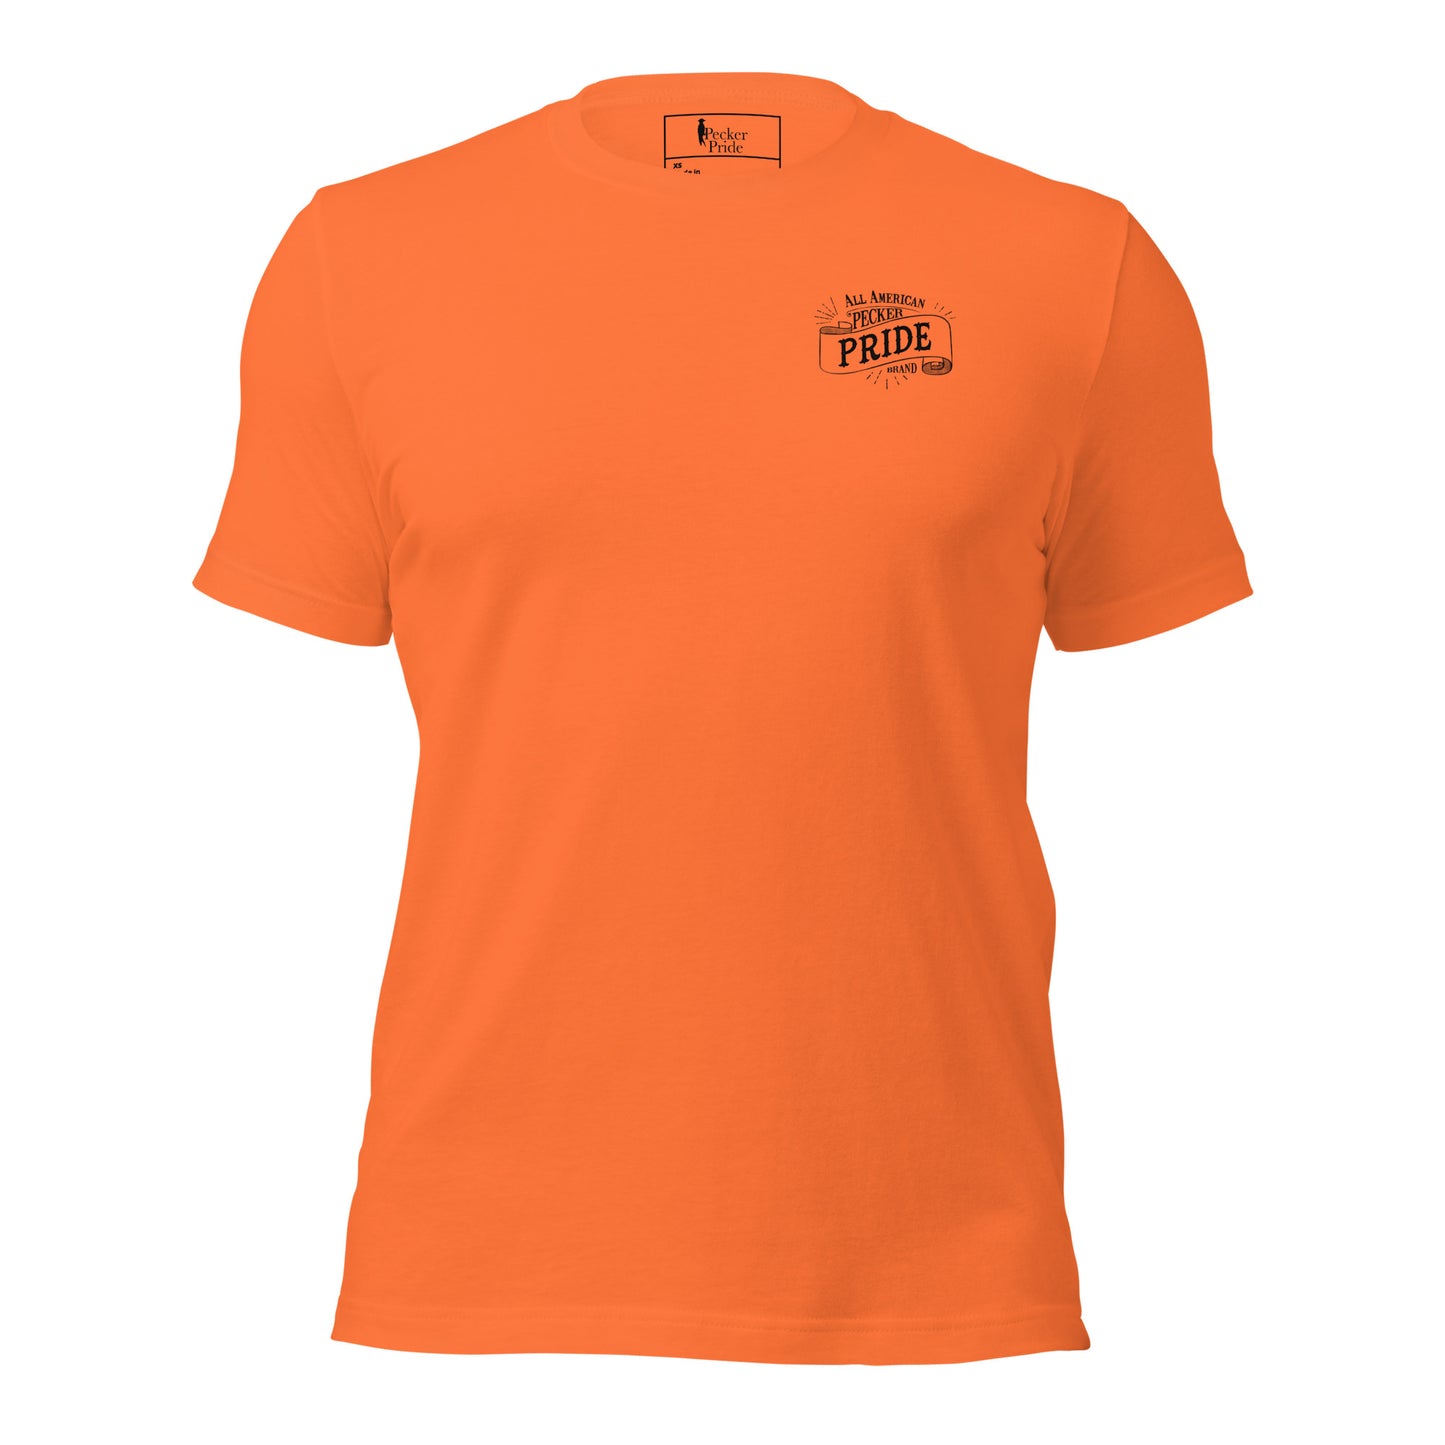 All American Pecker Pride Premium Unisex T-shirt | Orange